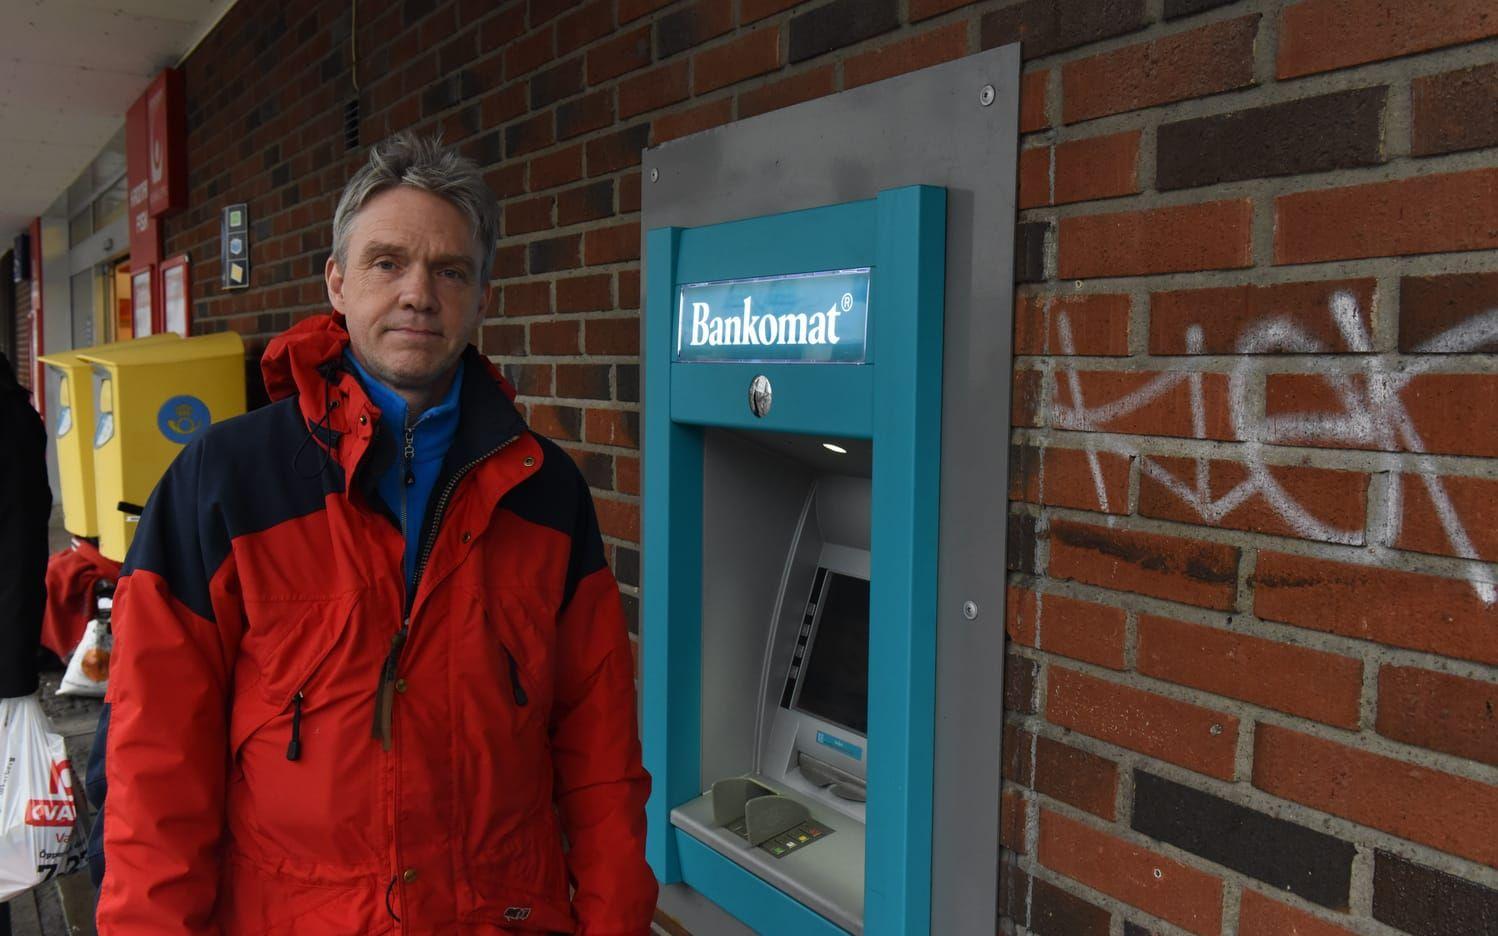 "Det borde vara bättre kameror". Christer Knutsson tycker att kamerorna vid bankomaterna är för dåliga.